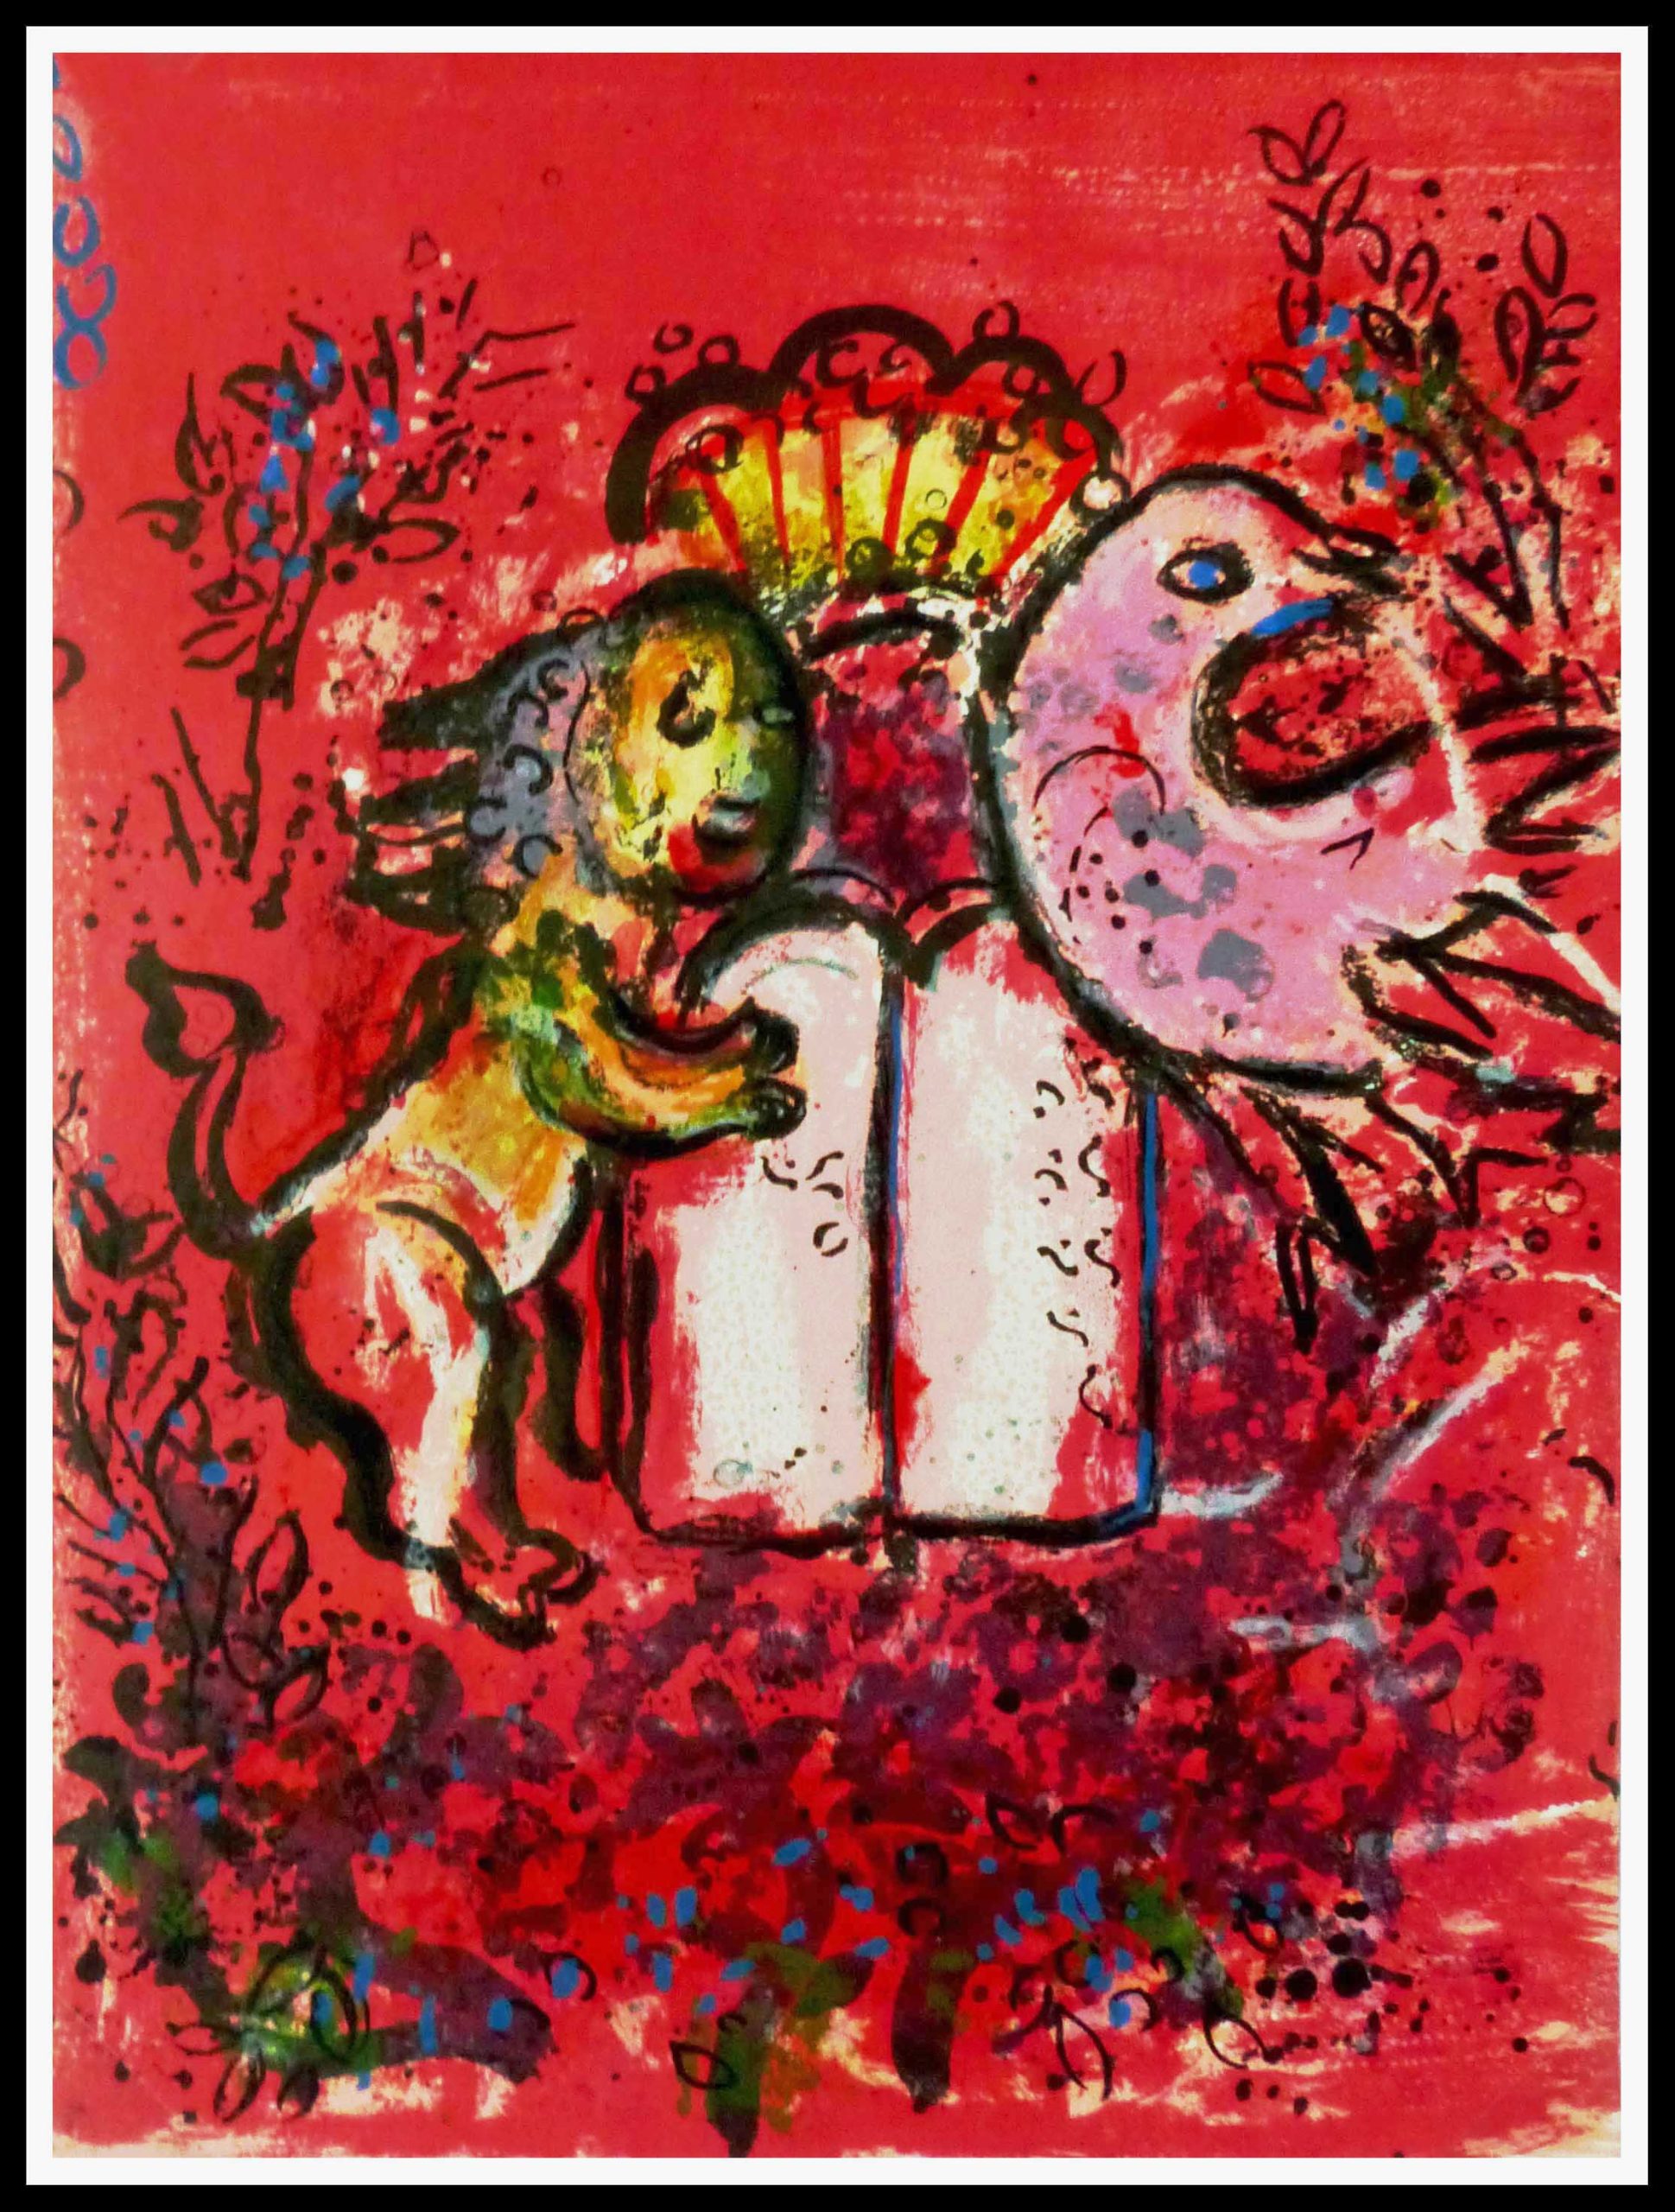 Vitraux de Jérusalem Frontispice 32 x 24 cm condition A+ Lithographie originale Marc Chagall 1962 Imprimerie Mourlot (2)